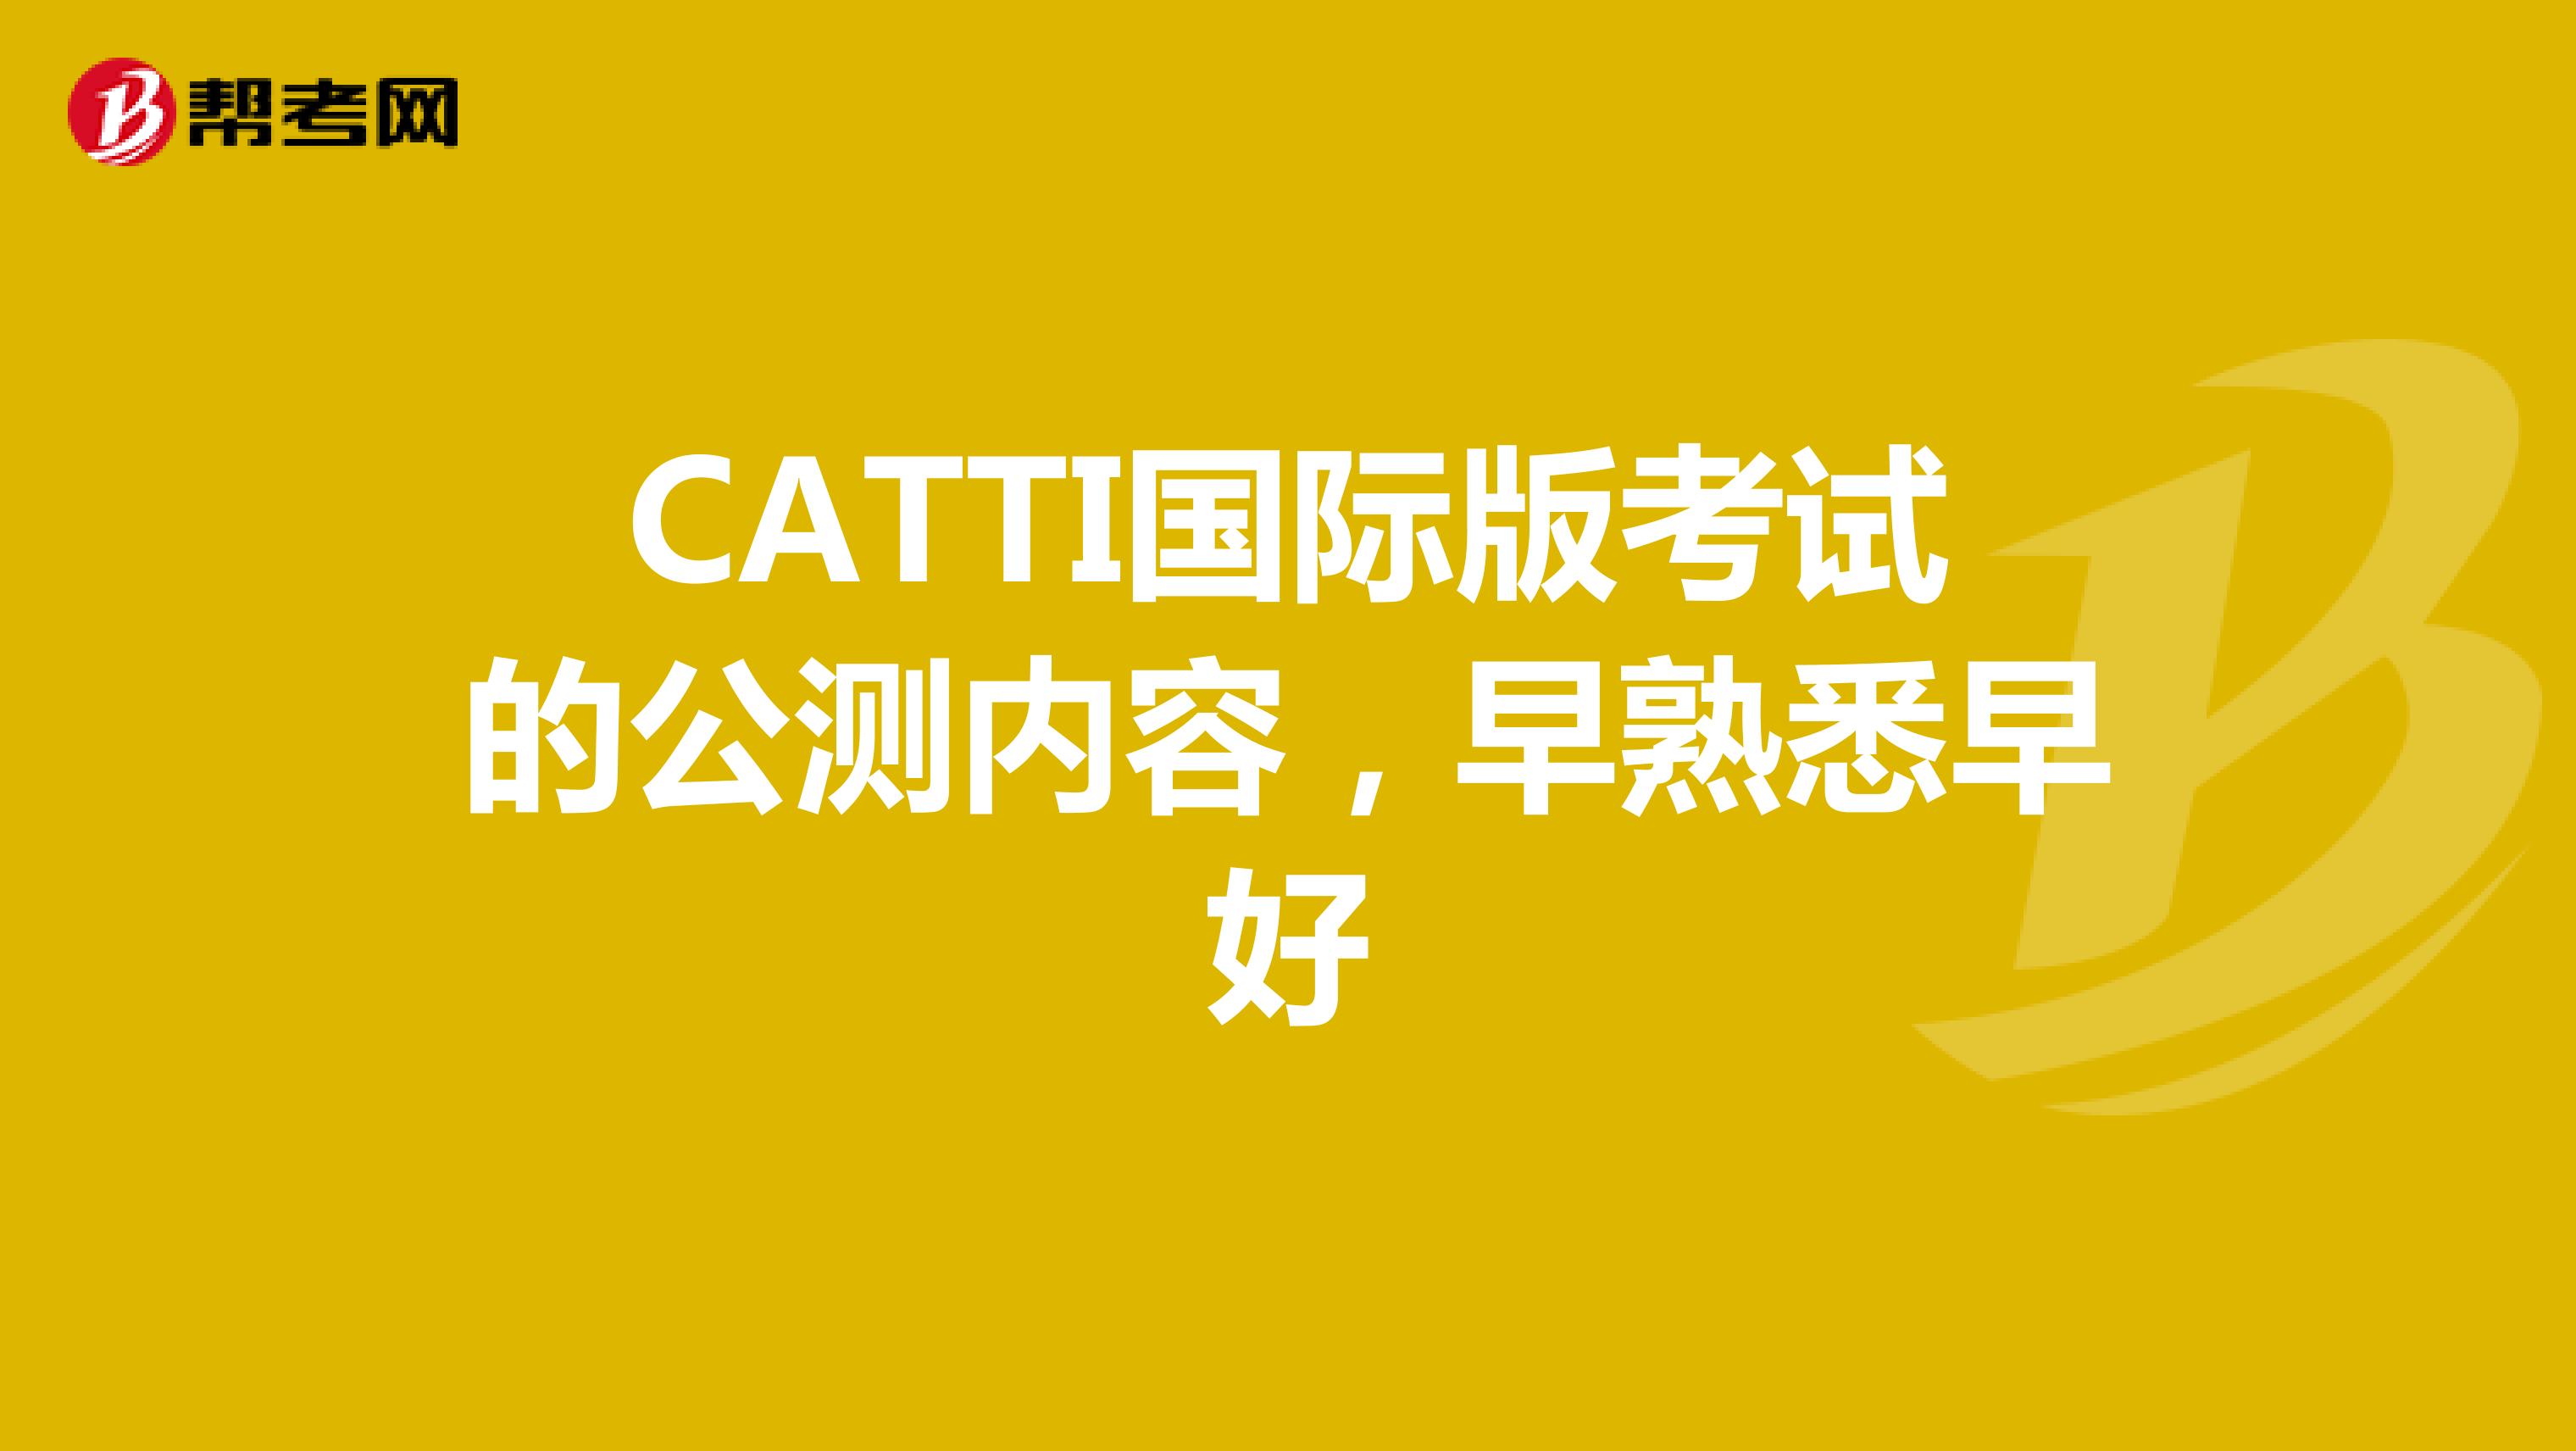 CATTI国际版考试的公测内容，早熟悉早好